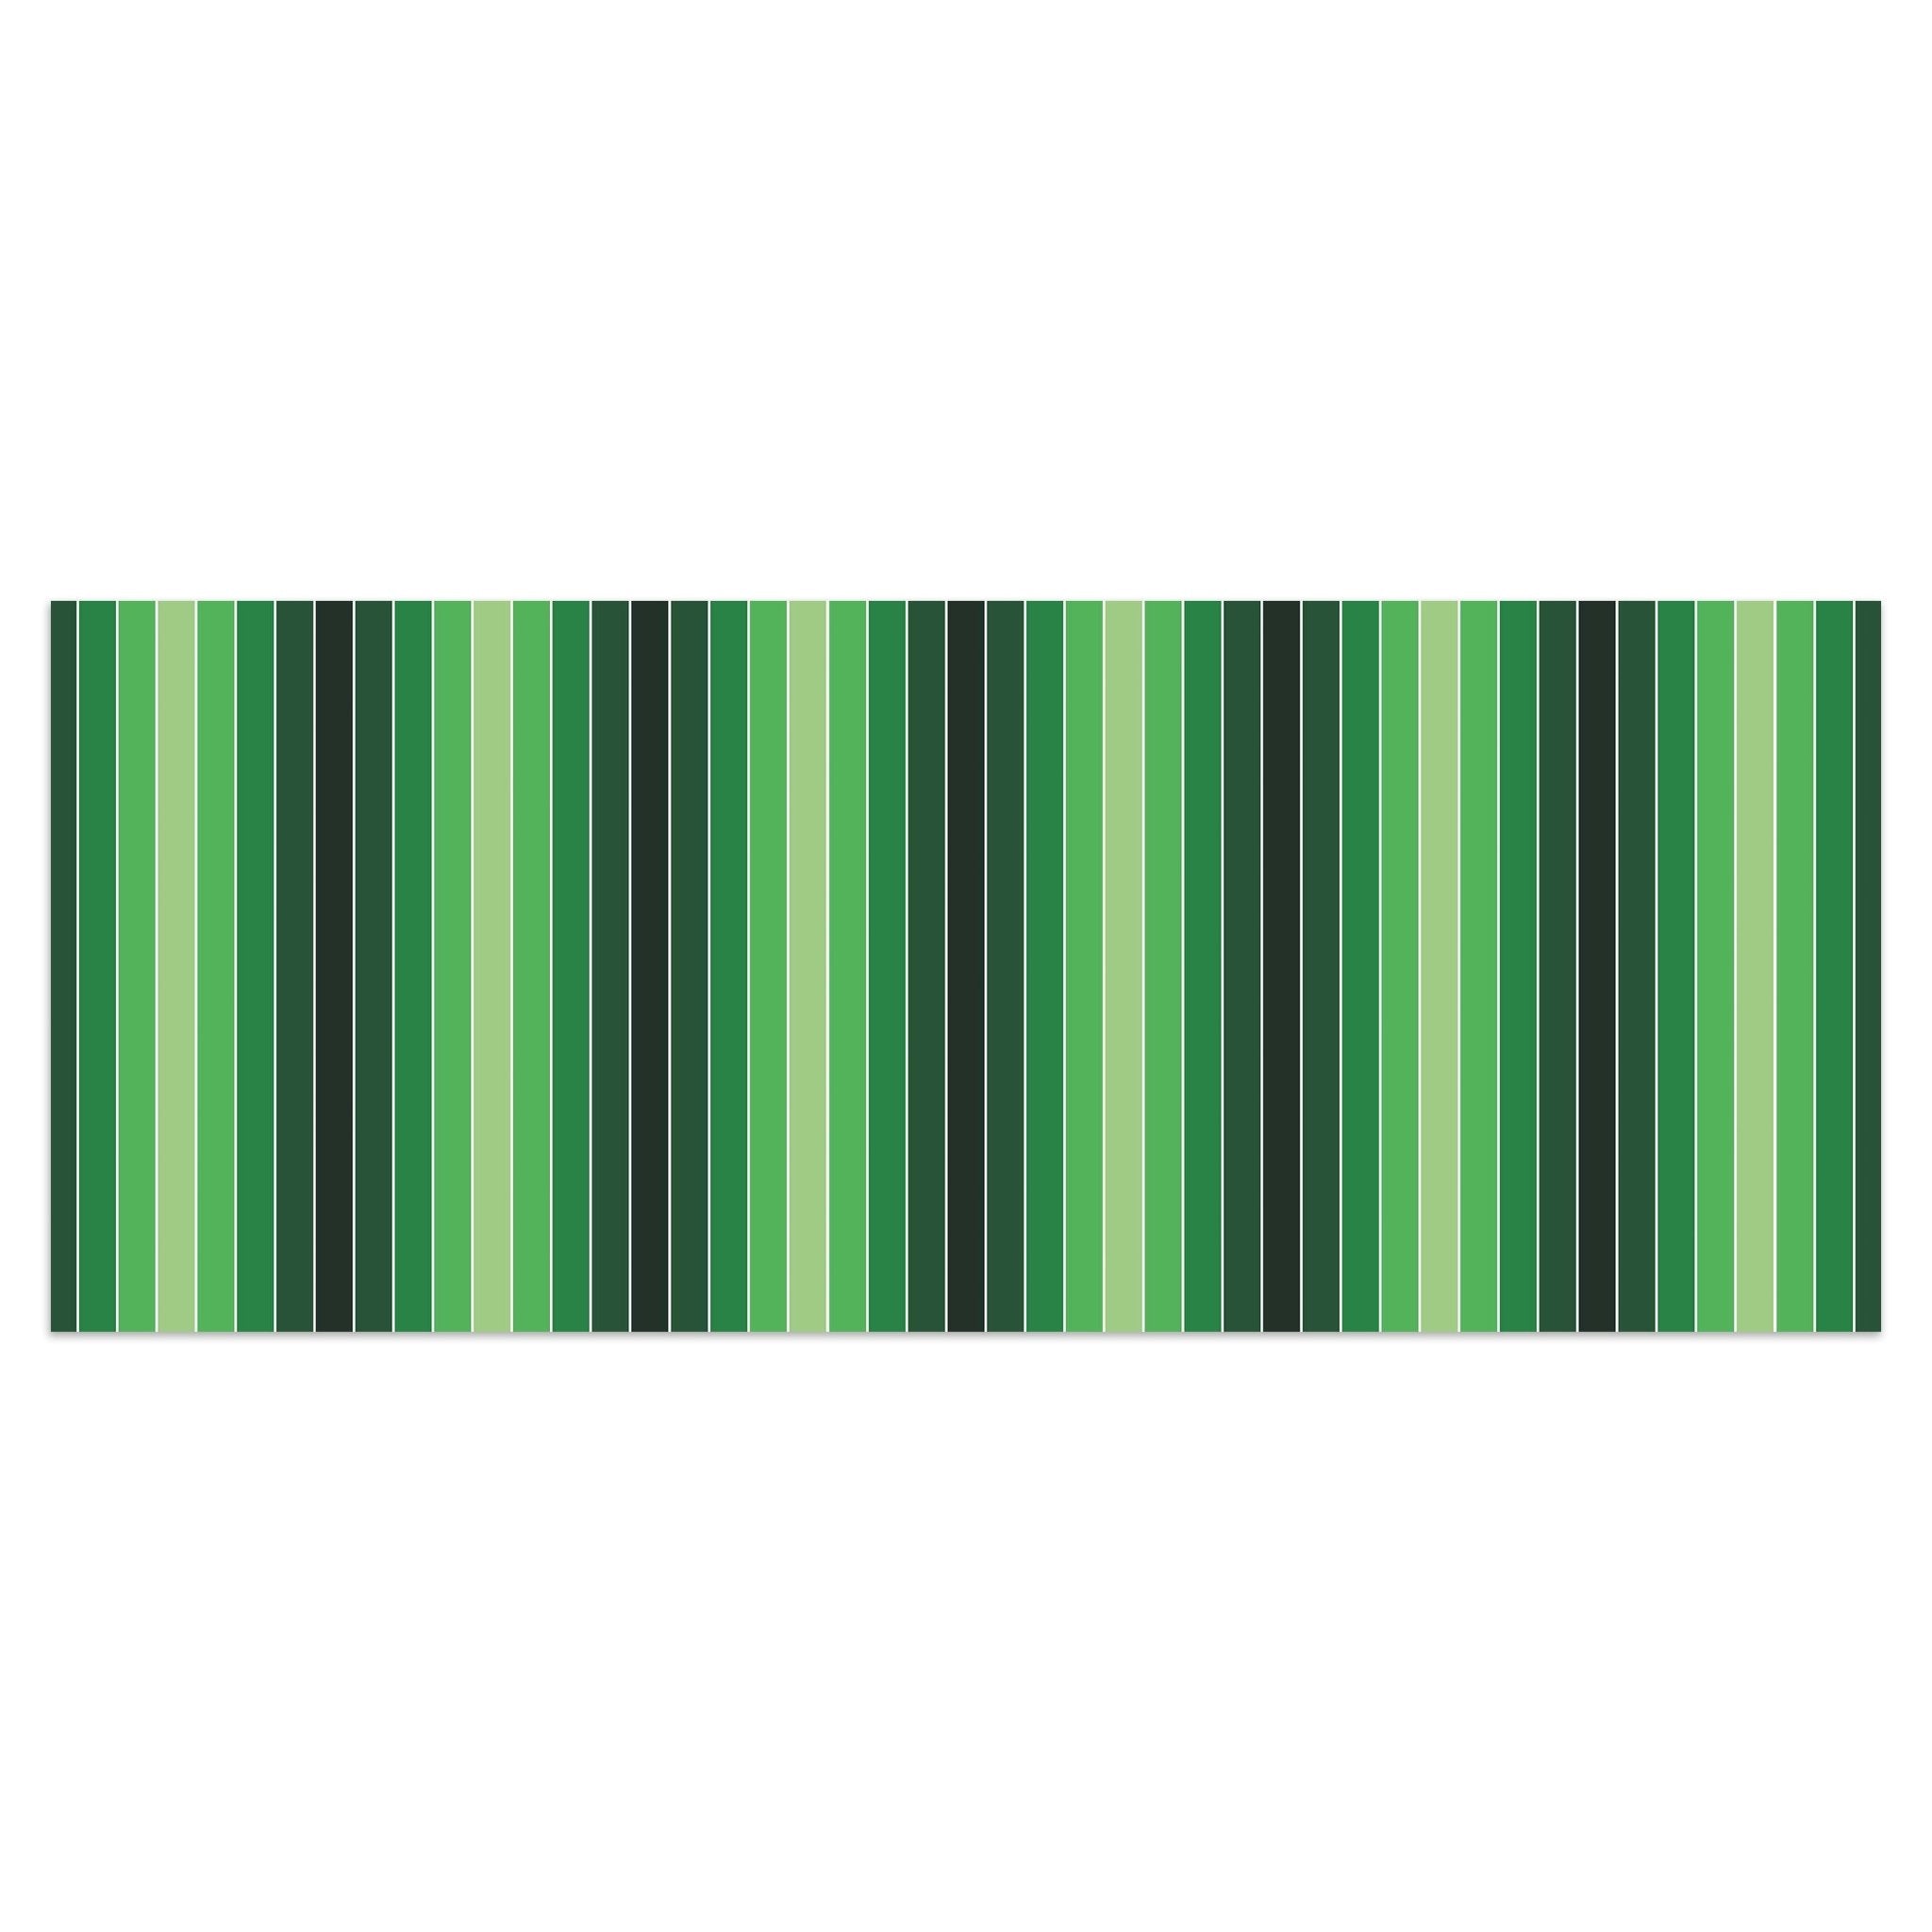 Leinwandbild Frisches Grün Muster M0090 kaufen - Bild 1